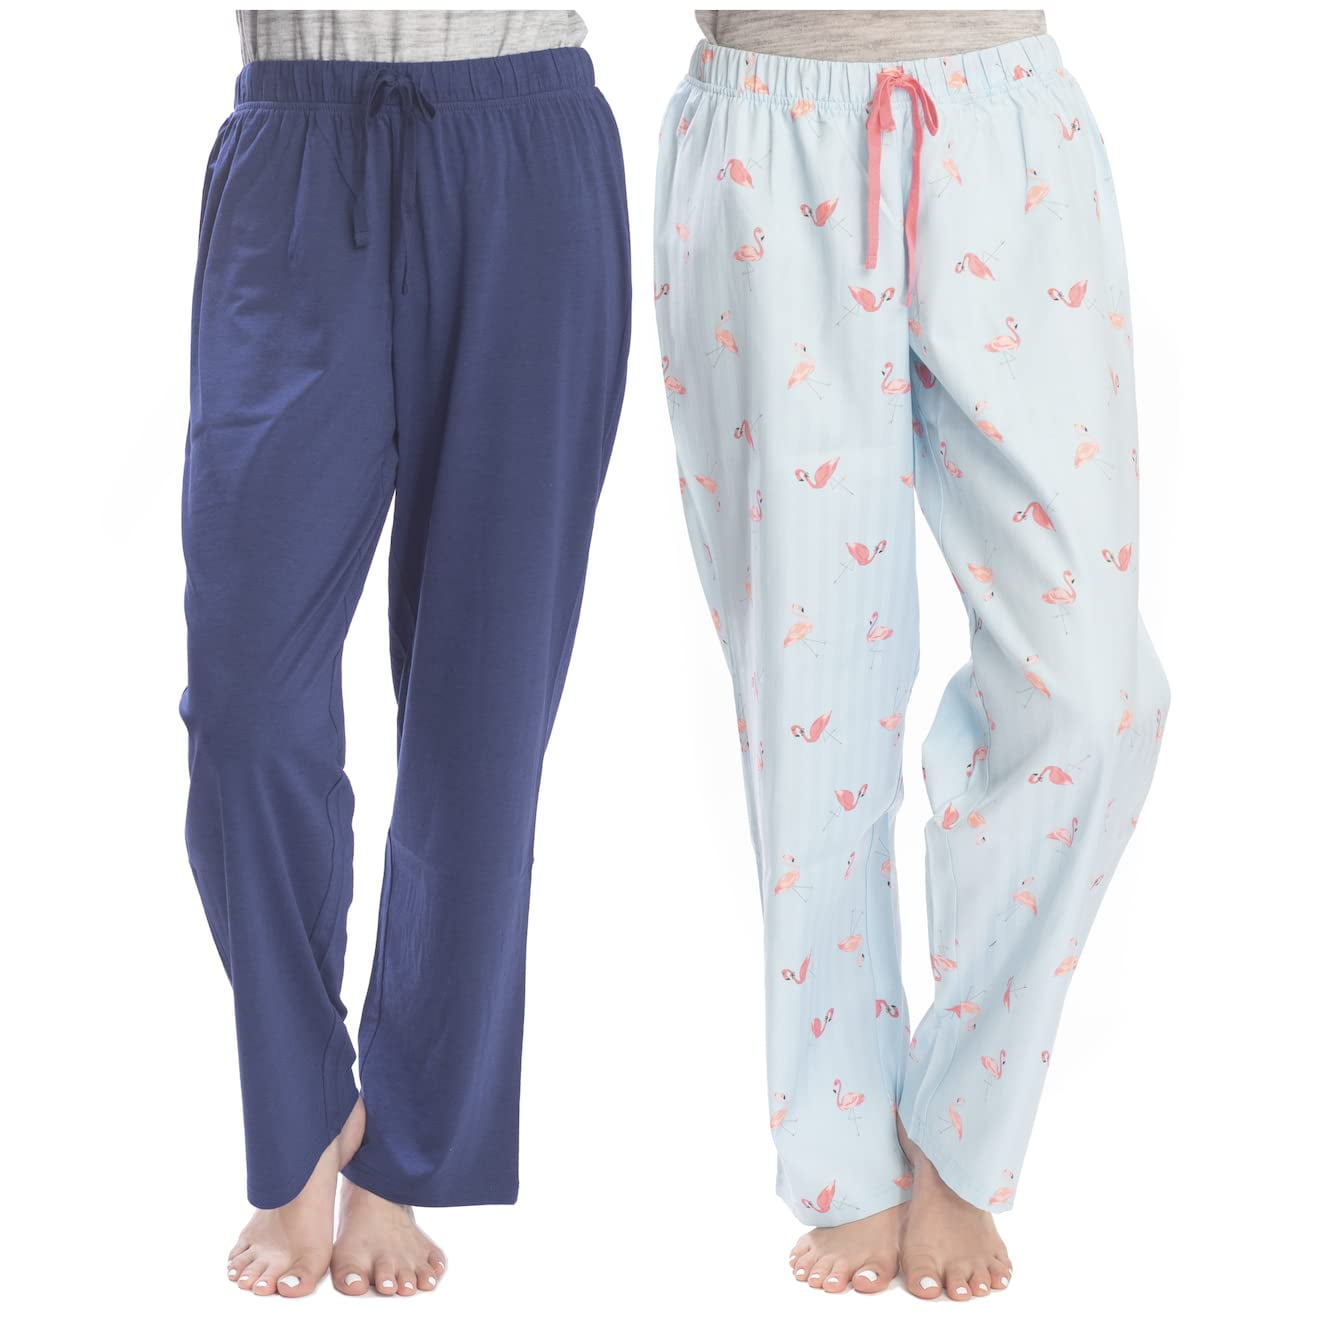 Briggs Ladies' Linen Blend Pant – Tan, Small - Walmart.com